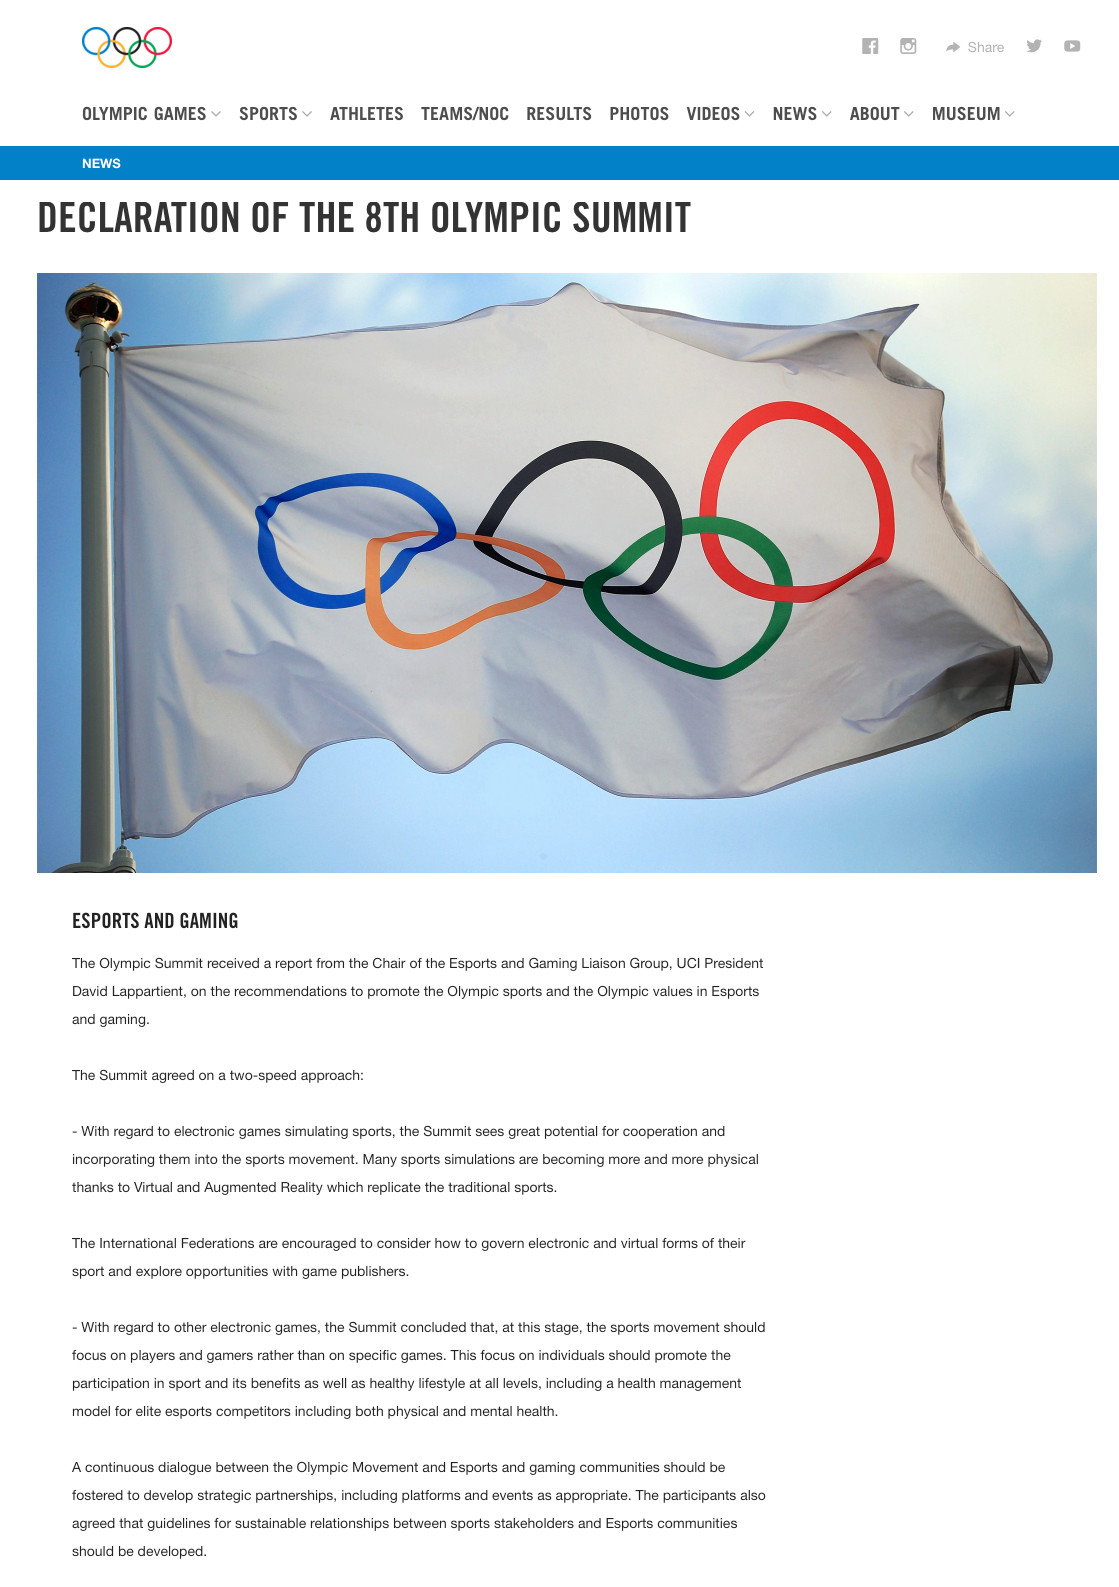 在奥林匹克峰会上 关于电竞又有了一点变化-游戏价值论